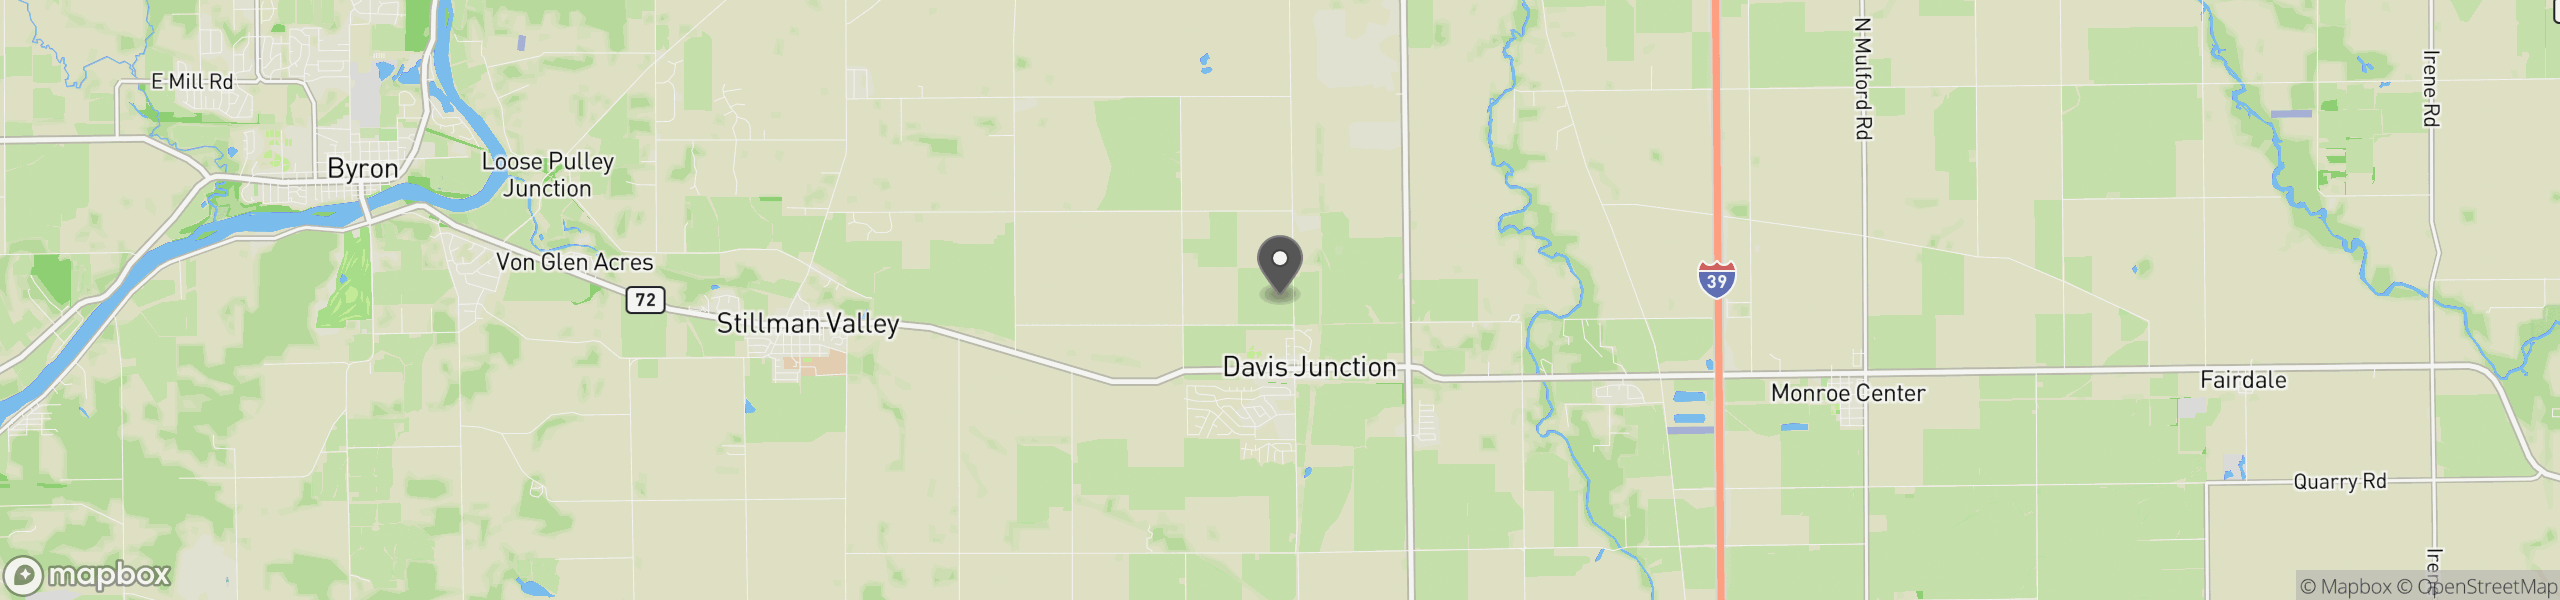 Davis Junction, IL 61020